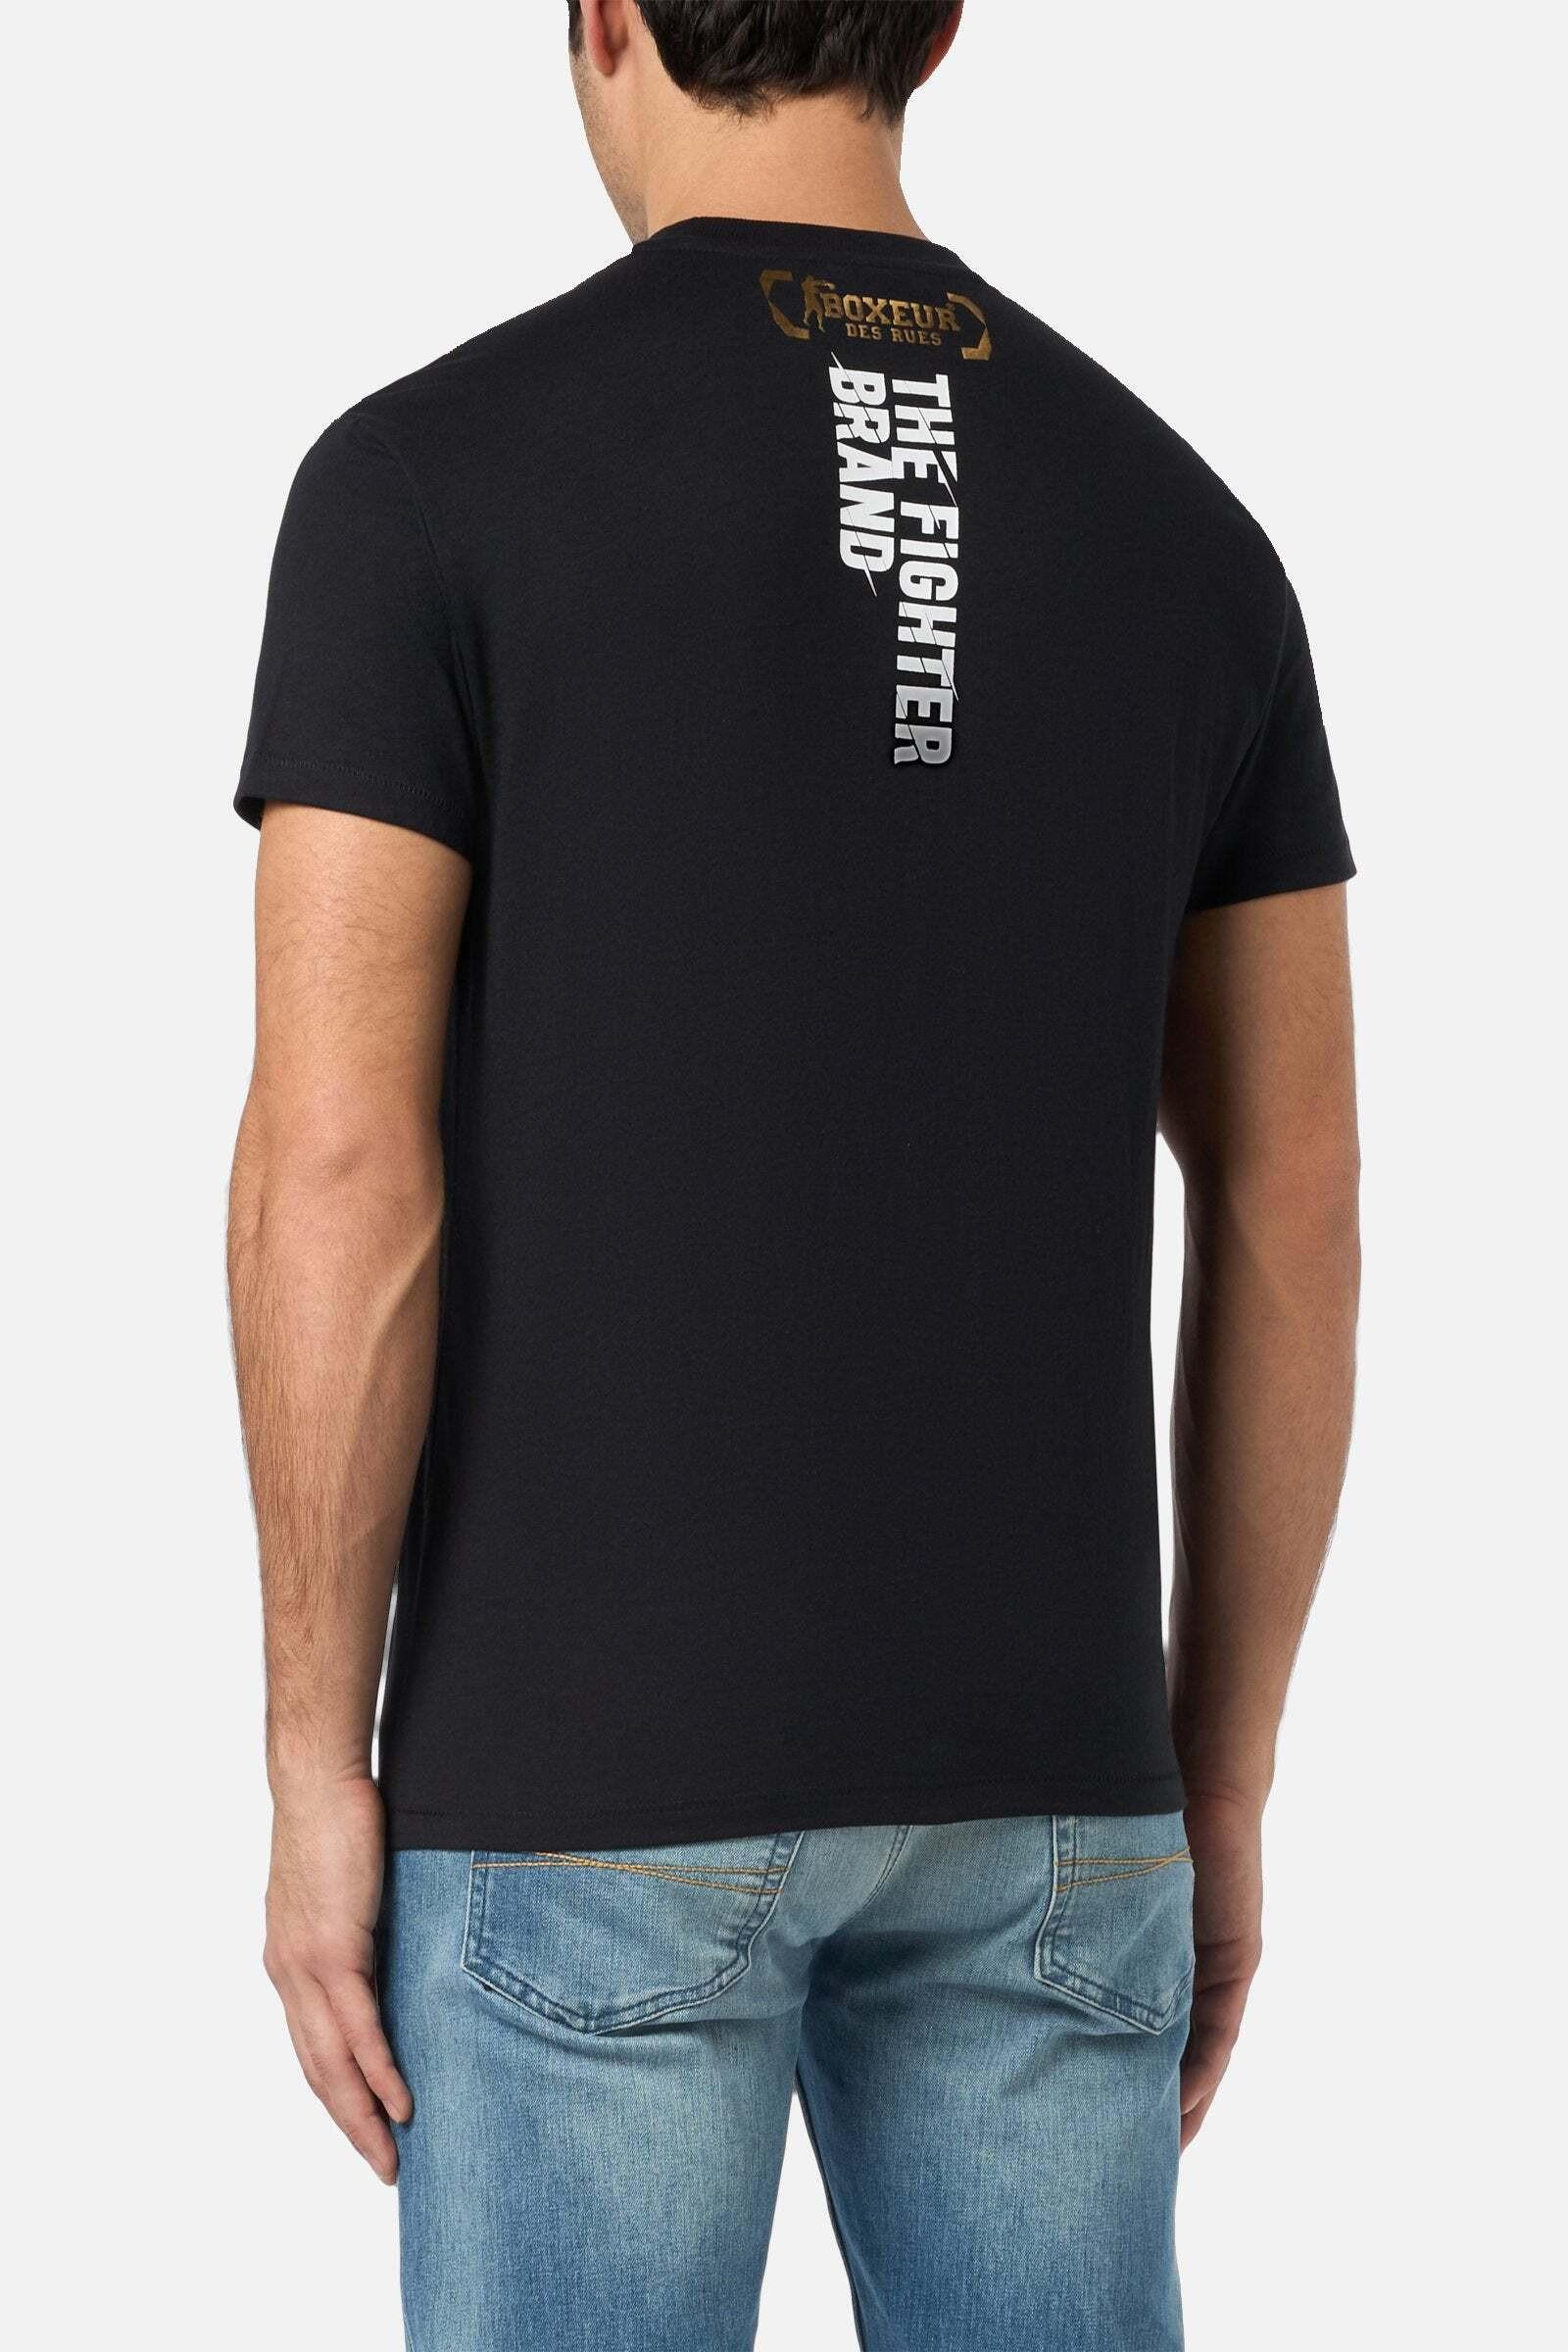 BOXEUR DES RUES  T-Shirt T-Shirt with Print 